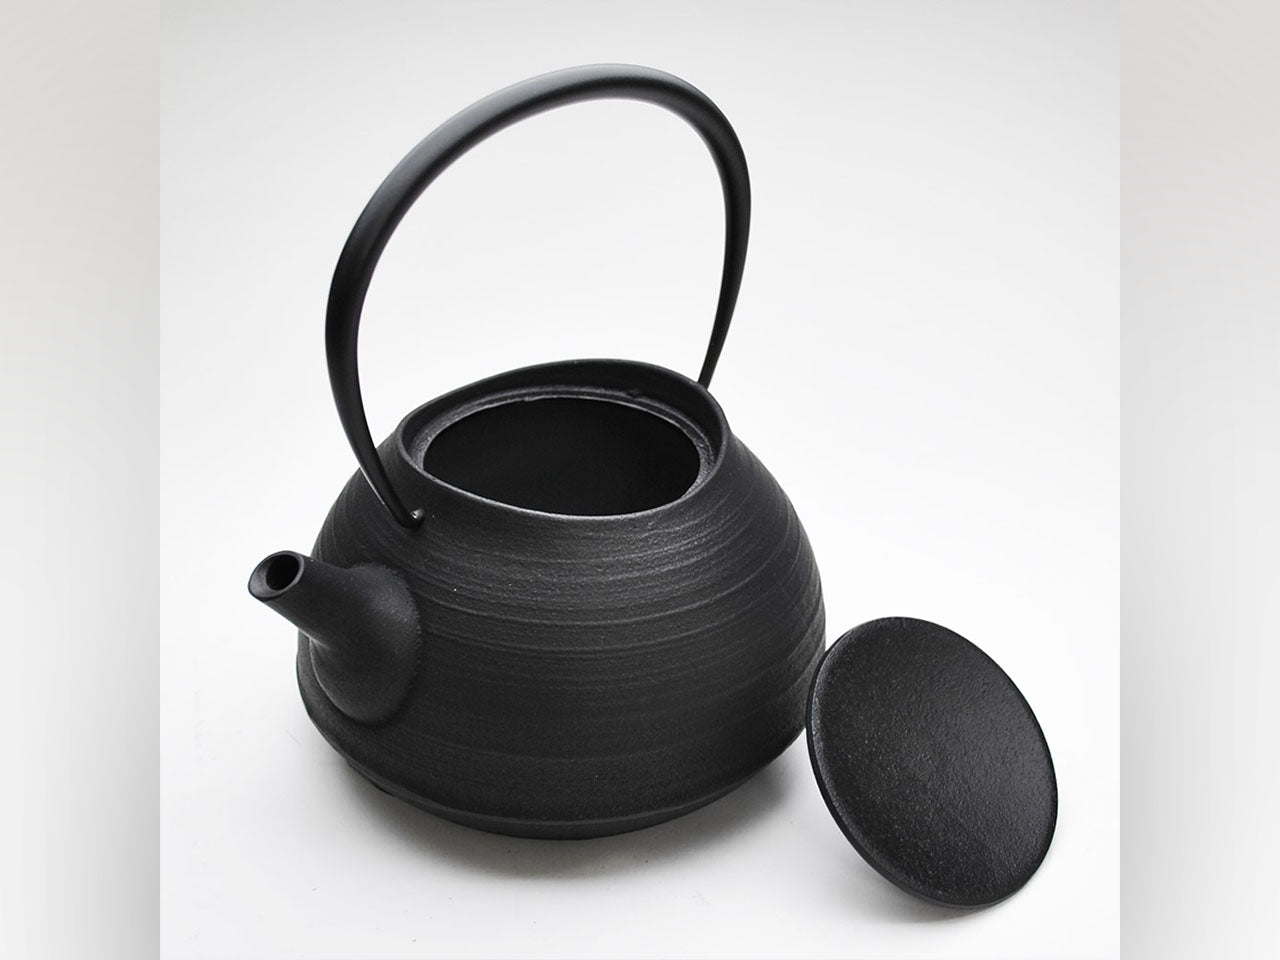 茶具 铁壶 刷毛目 1.0L 黑色 200V电磁炉可用 南部铁器 金属工艺品